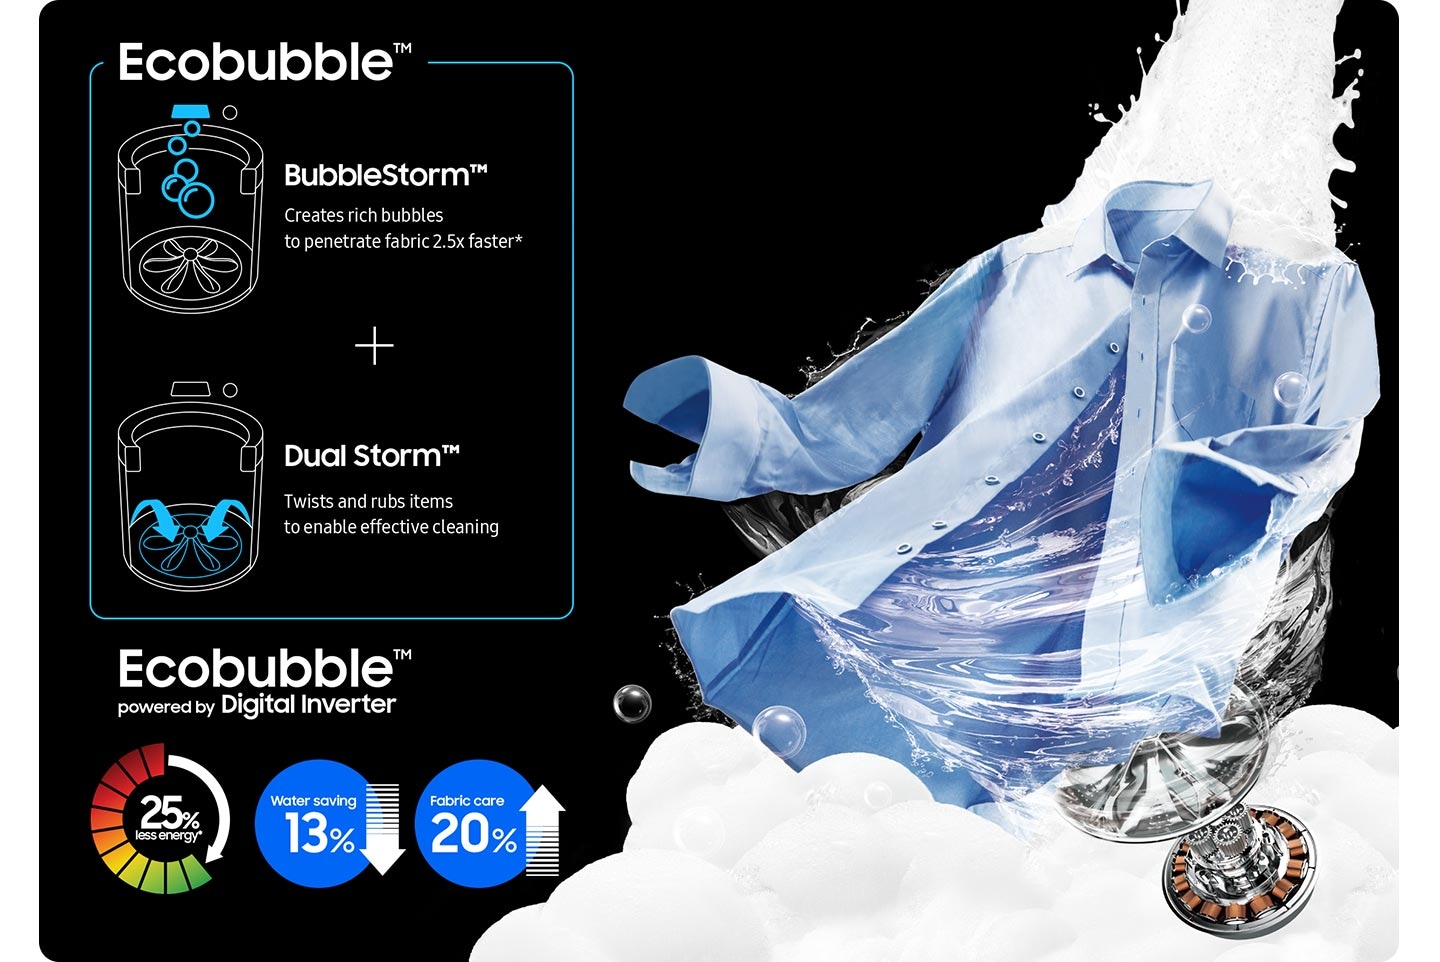 กระแสน้ำที่แรง โฟม และมอเตอร์เทคโนโลยี Digital Inverter กำลังซักเสื้อเชิ้ตสีน้ำเงิน Bubblestorm™ สร้างฟองอากาศเข้มข้นเพื่อเจาะผ้าเร็วขึ้น 2.5 เท่า* และ Dual Storm™ บิดและถูสิ่งของเพื่อให้ทำความสะอาดได้อย่างมีประสิทธิภาพ Ecobubble™ ขับเคลื่อนโดย Digital Inverter ประหยัดพลังงาน 60% น้ำ 11% และดูแลผ้าได้ดีขึ้น 20%